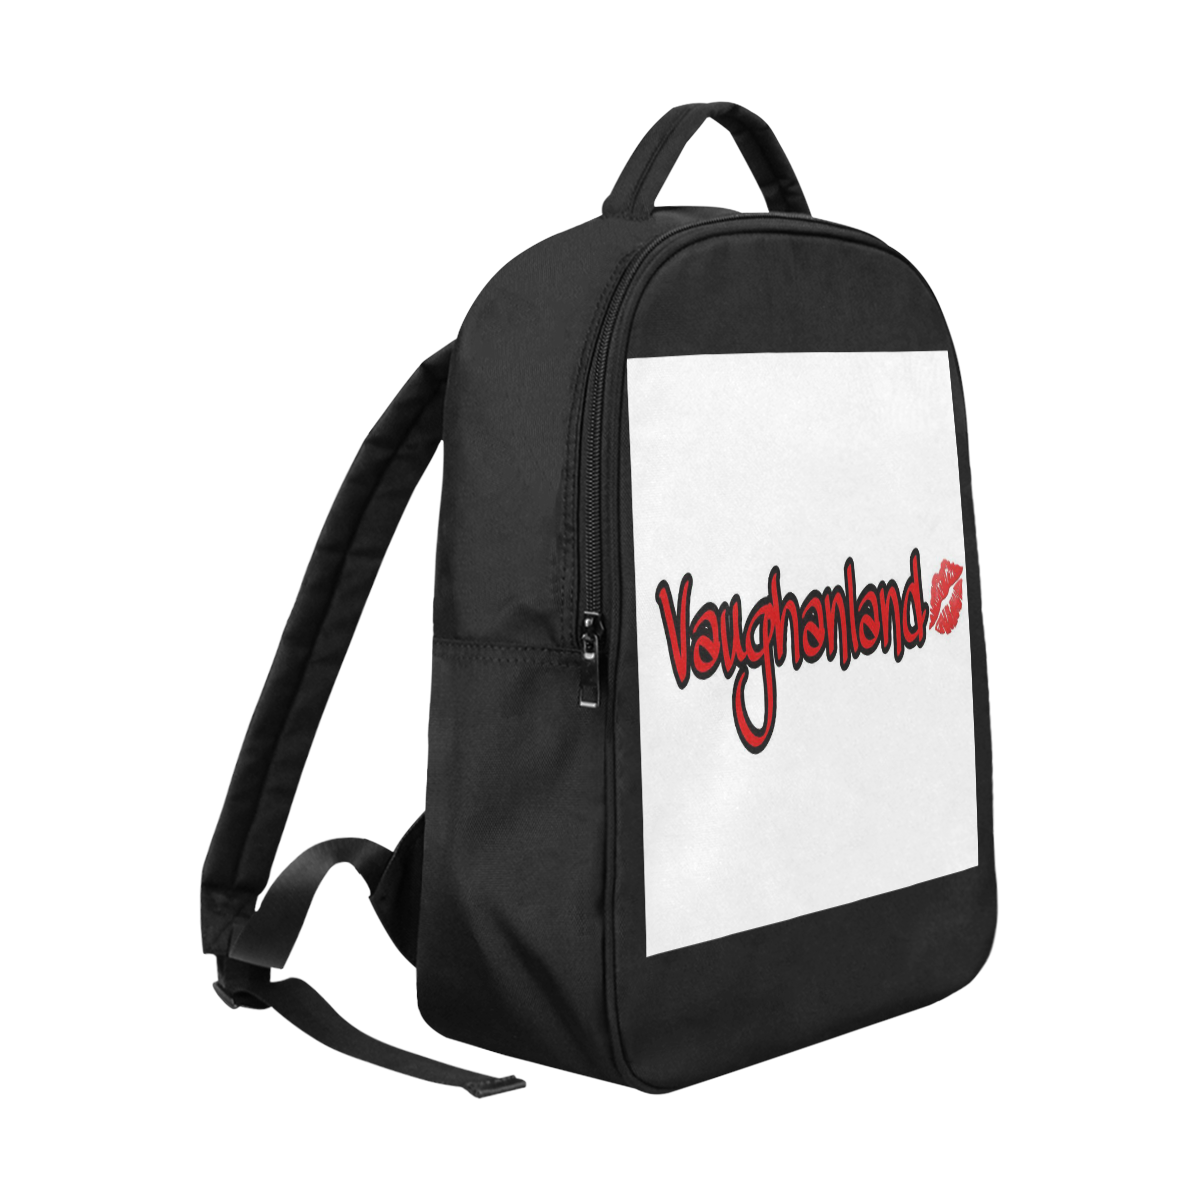 VL "got your back" bag Popular Fabric Backpack (Model 1683)